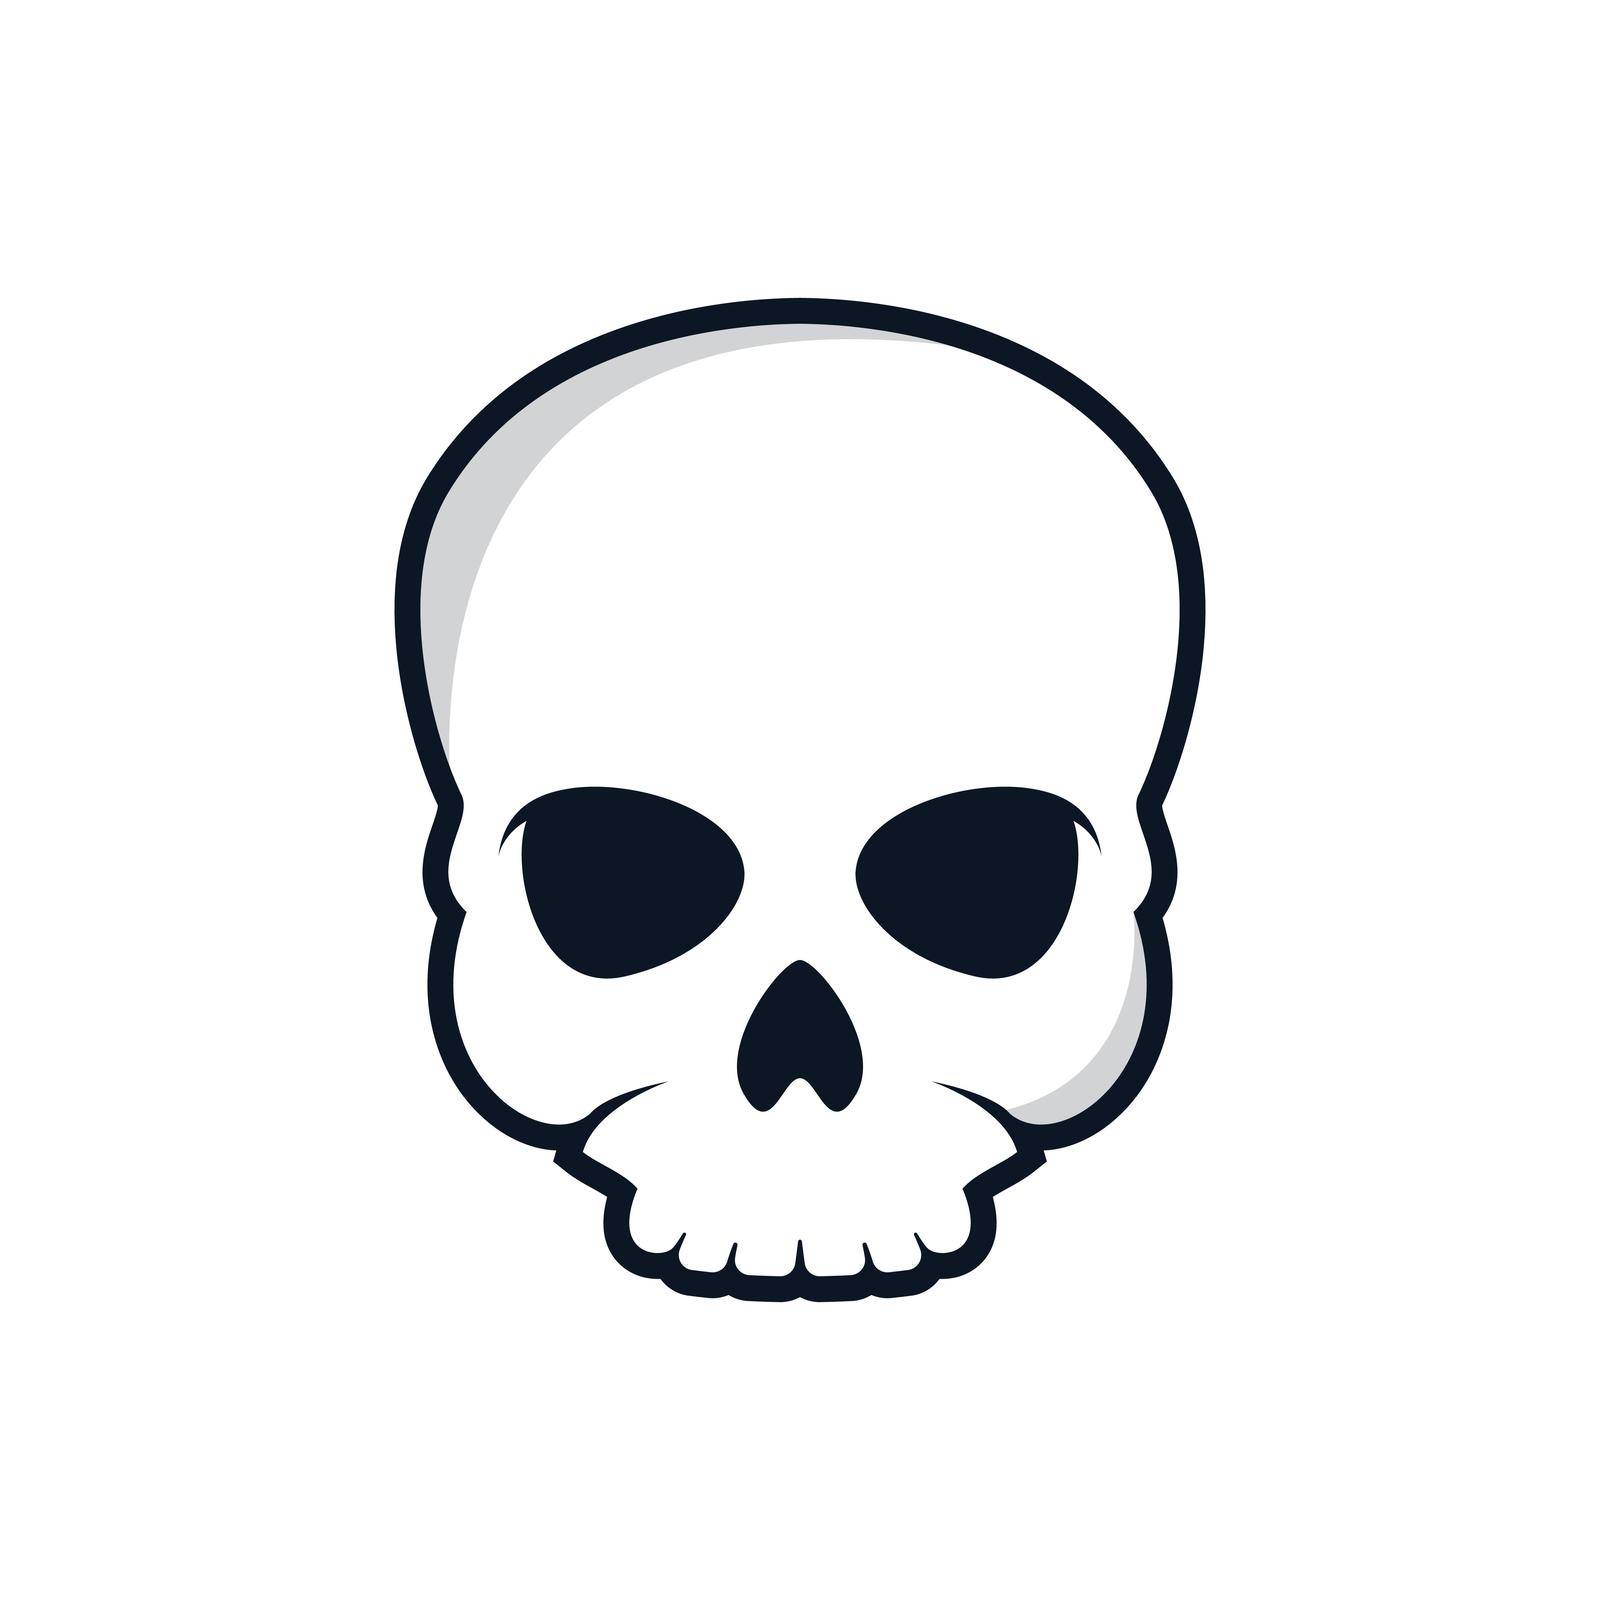 Skull vector icon illustration by Fat17